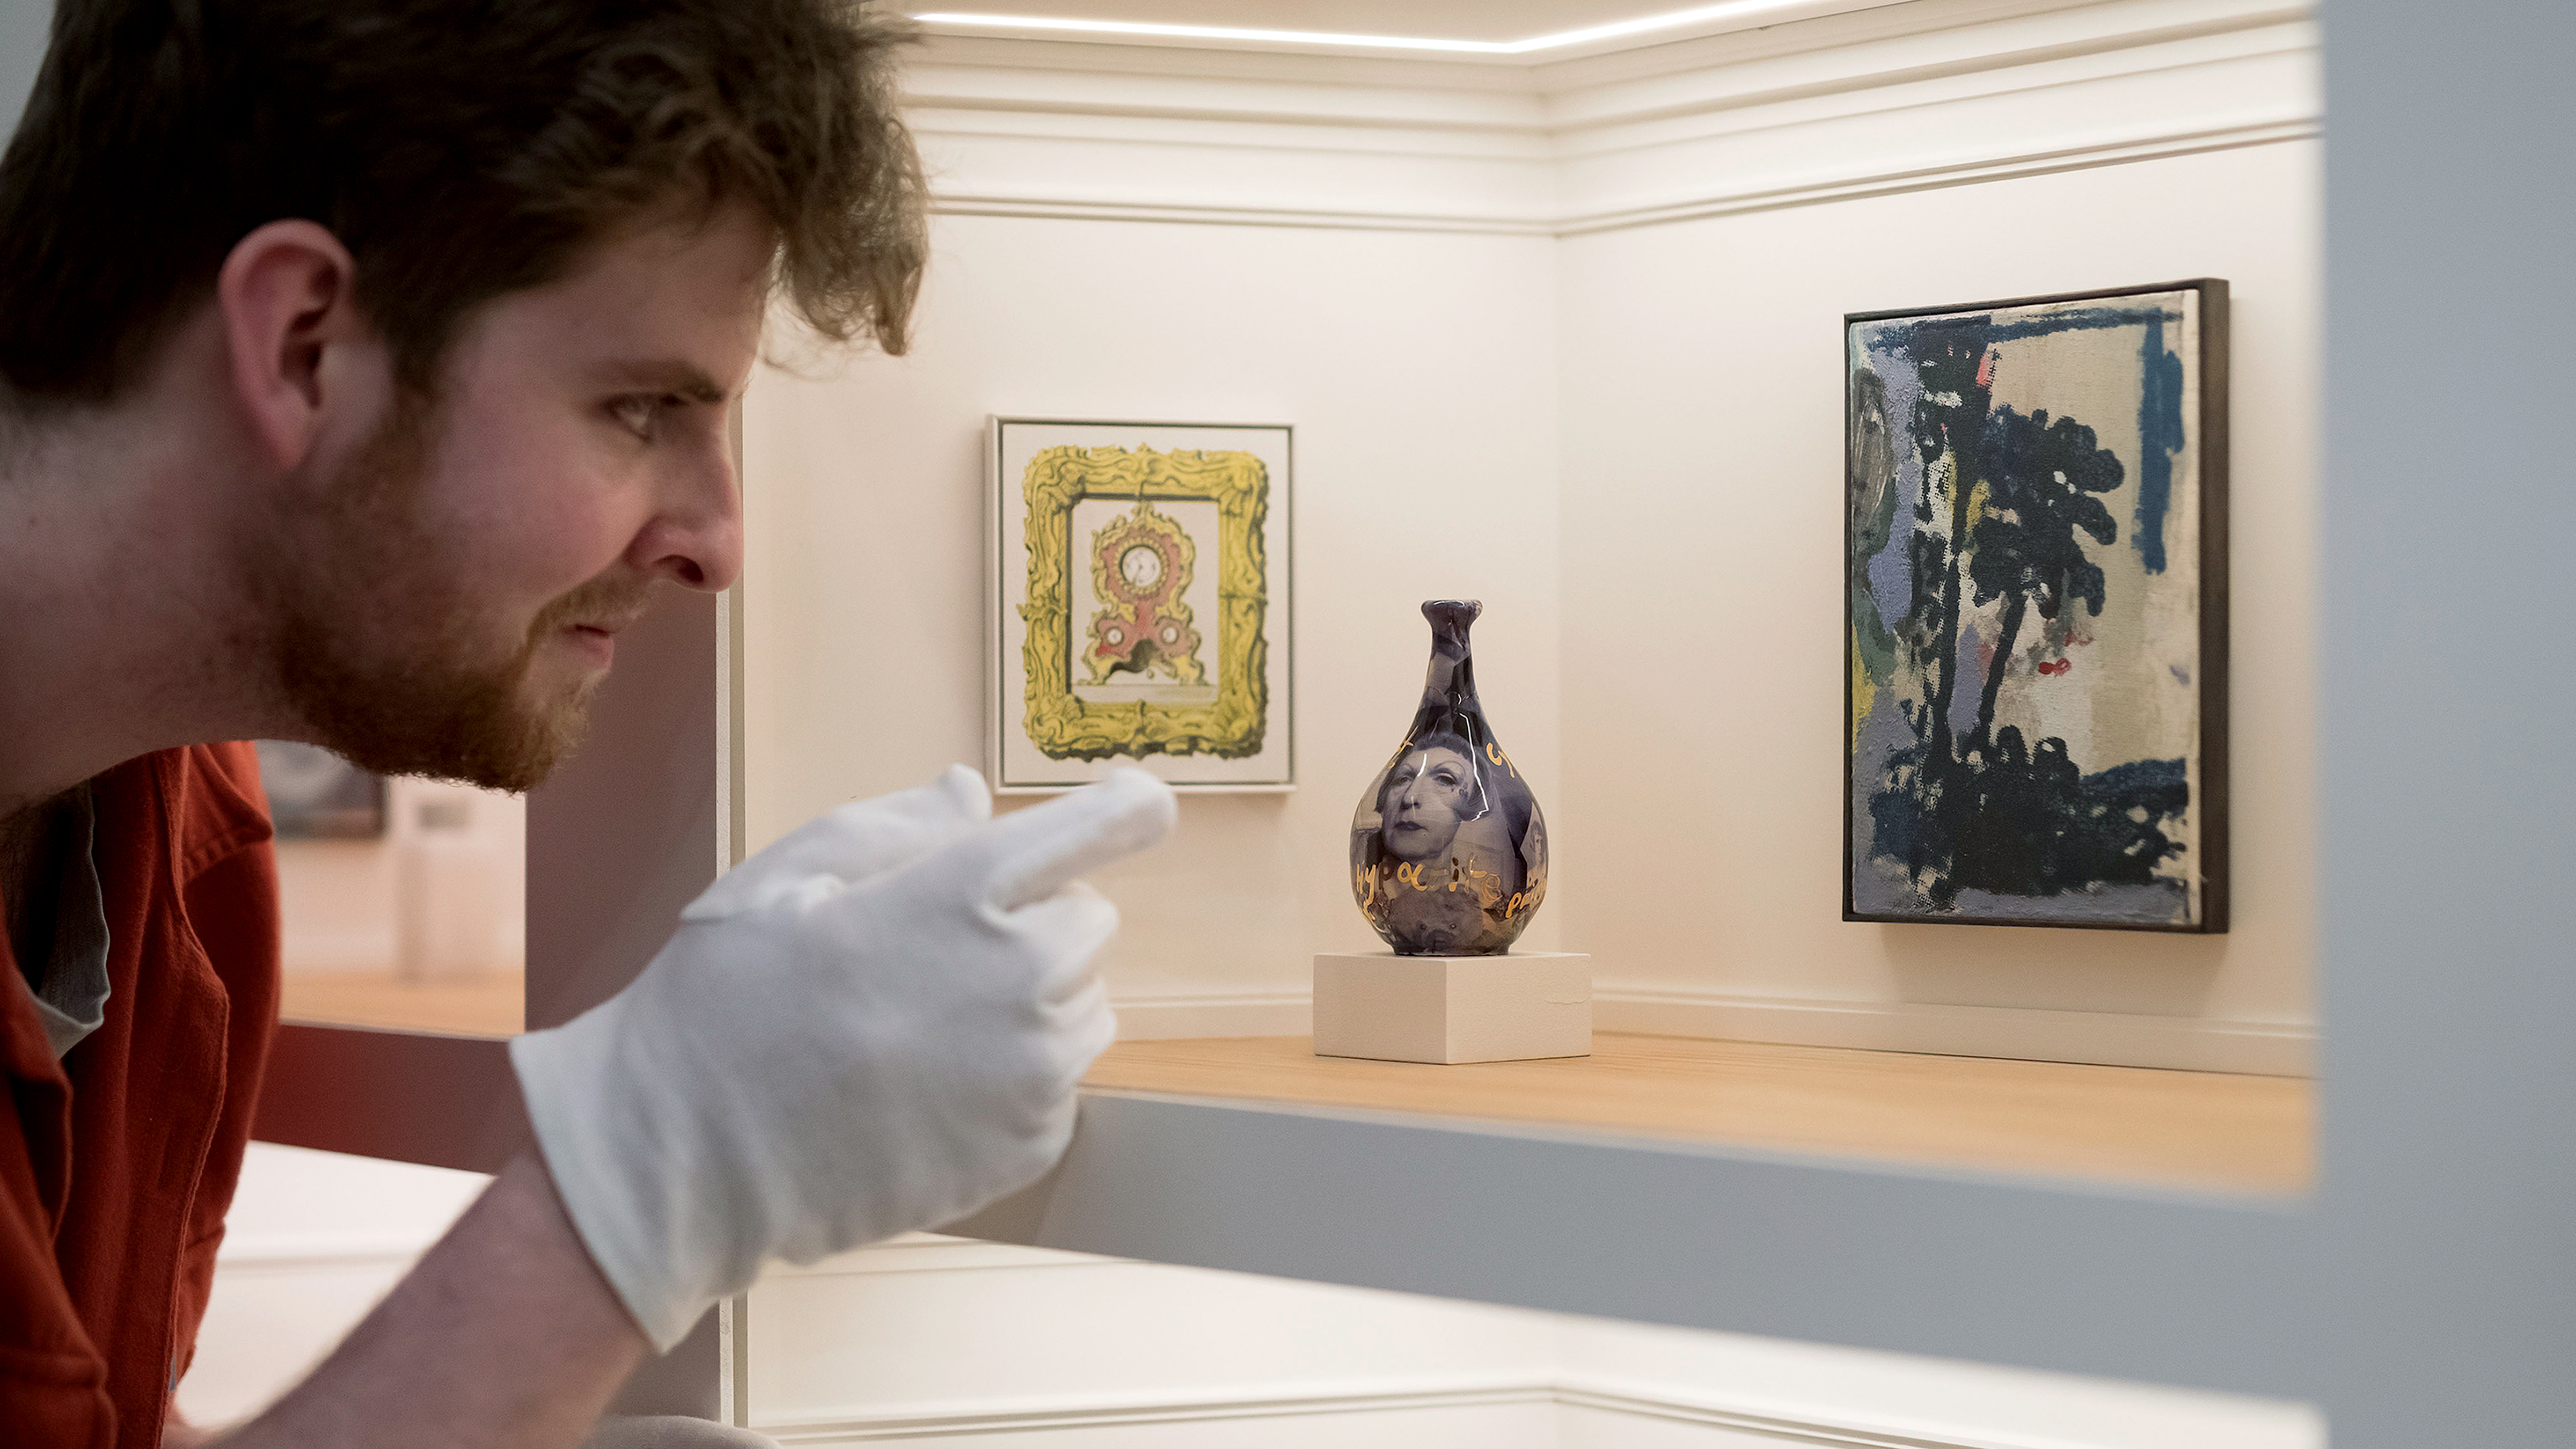 Ein Mann mit Handschuhen betrachtet eine Ausstellung in einer Modellkunstgalerie mit 80 originalen Miniaturkunstwerken